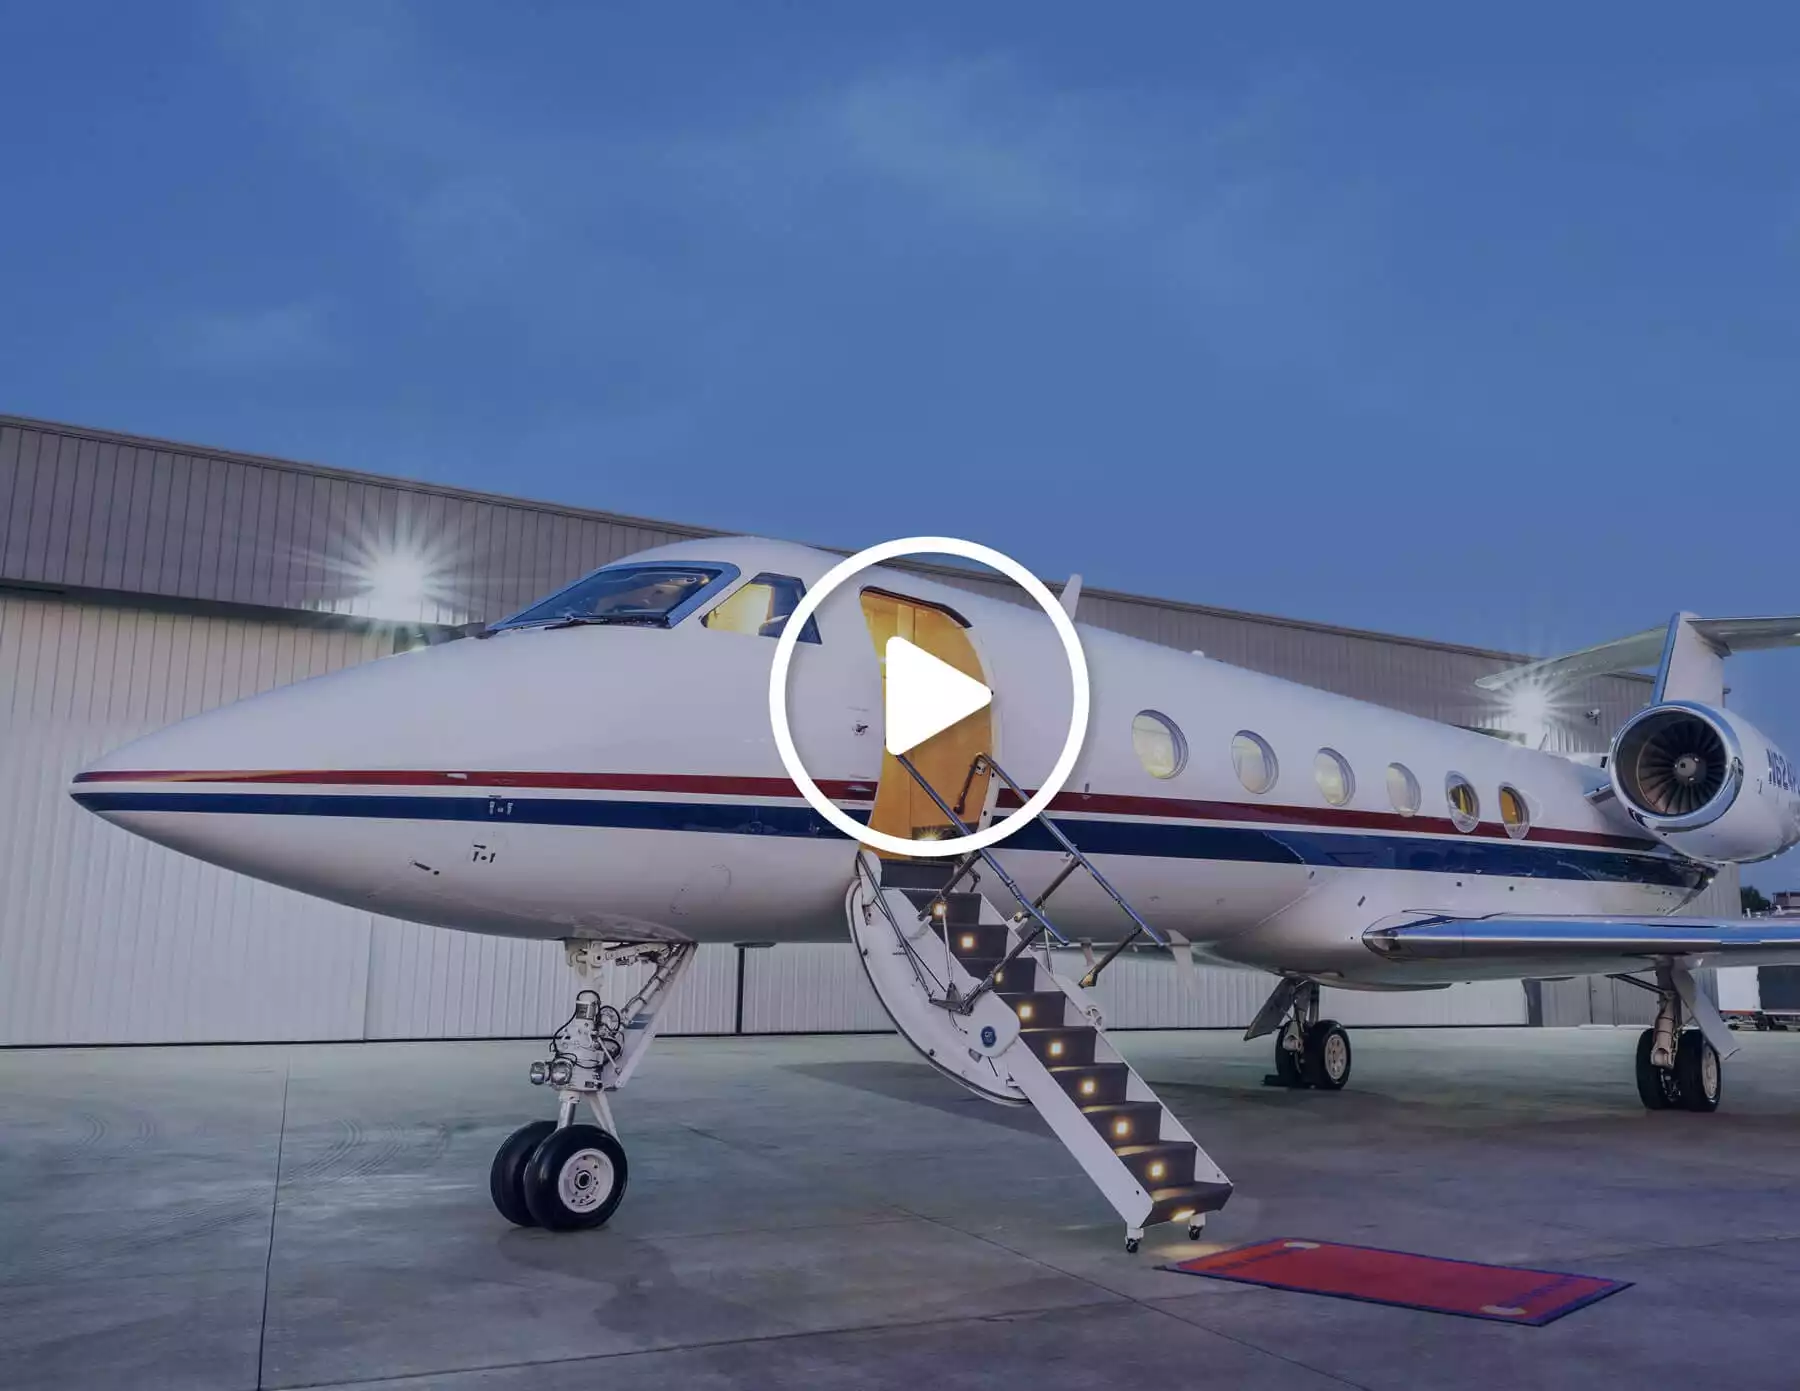 Private Charter Plane Video Cover